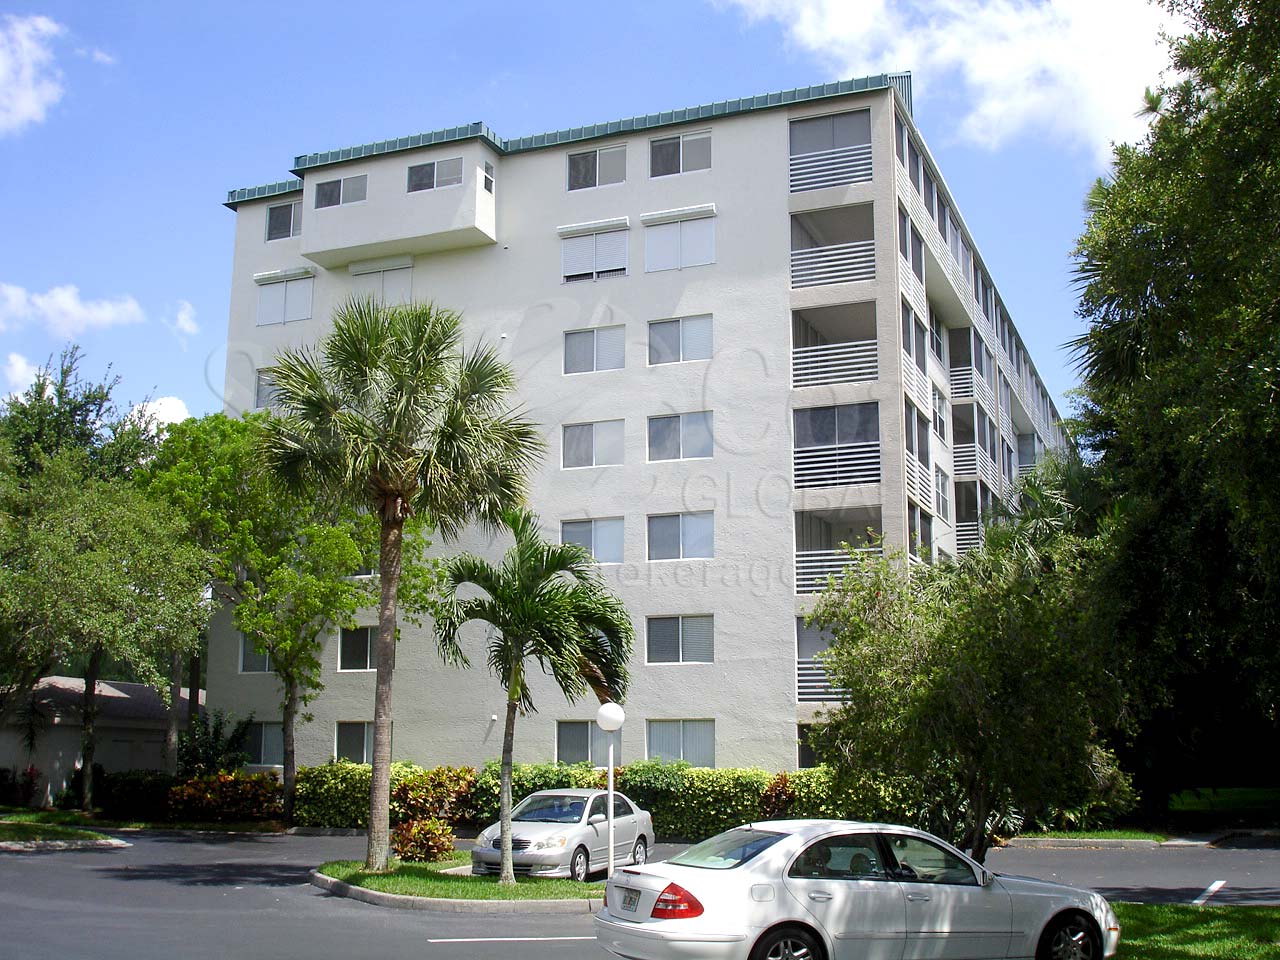 Naples Cove Condominium Building